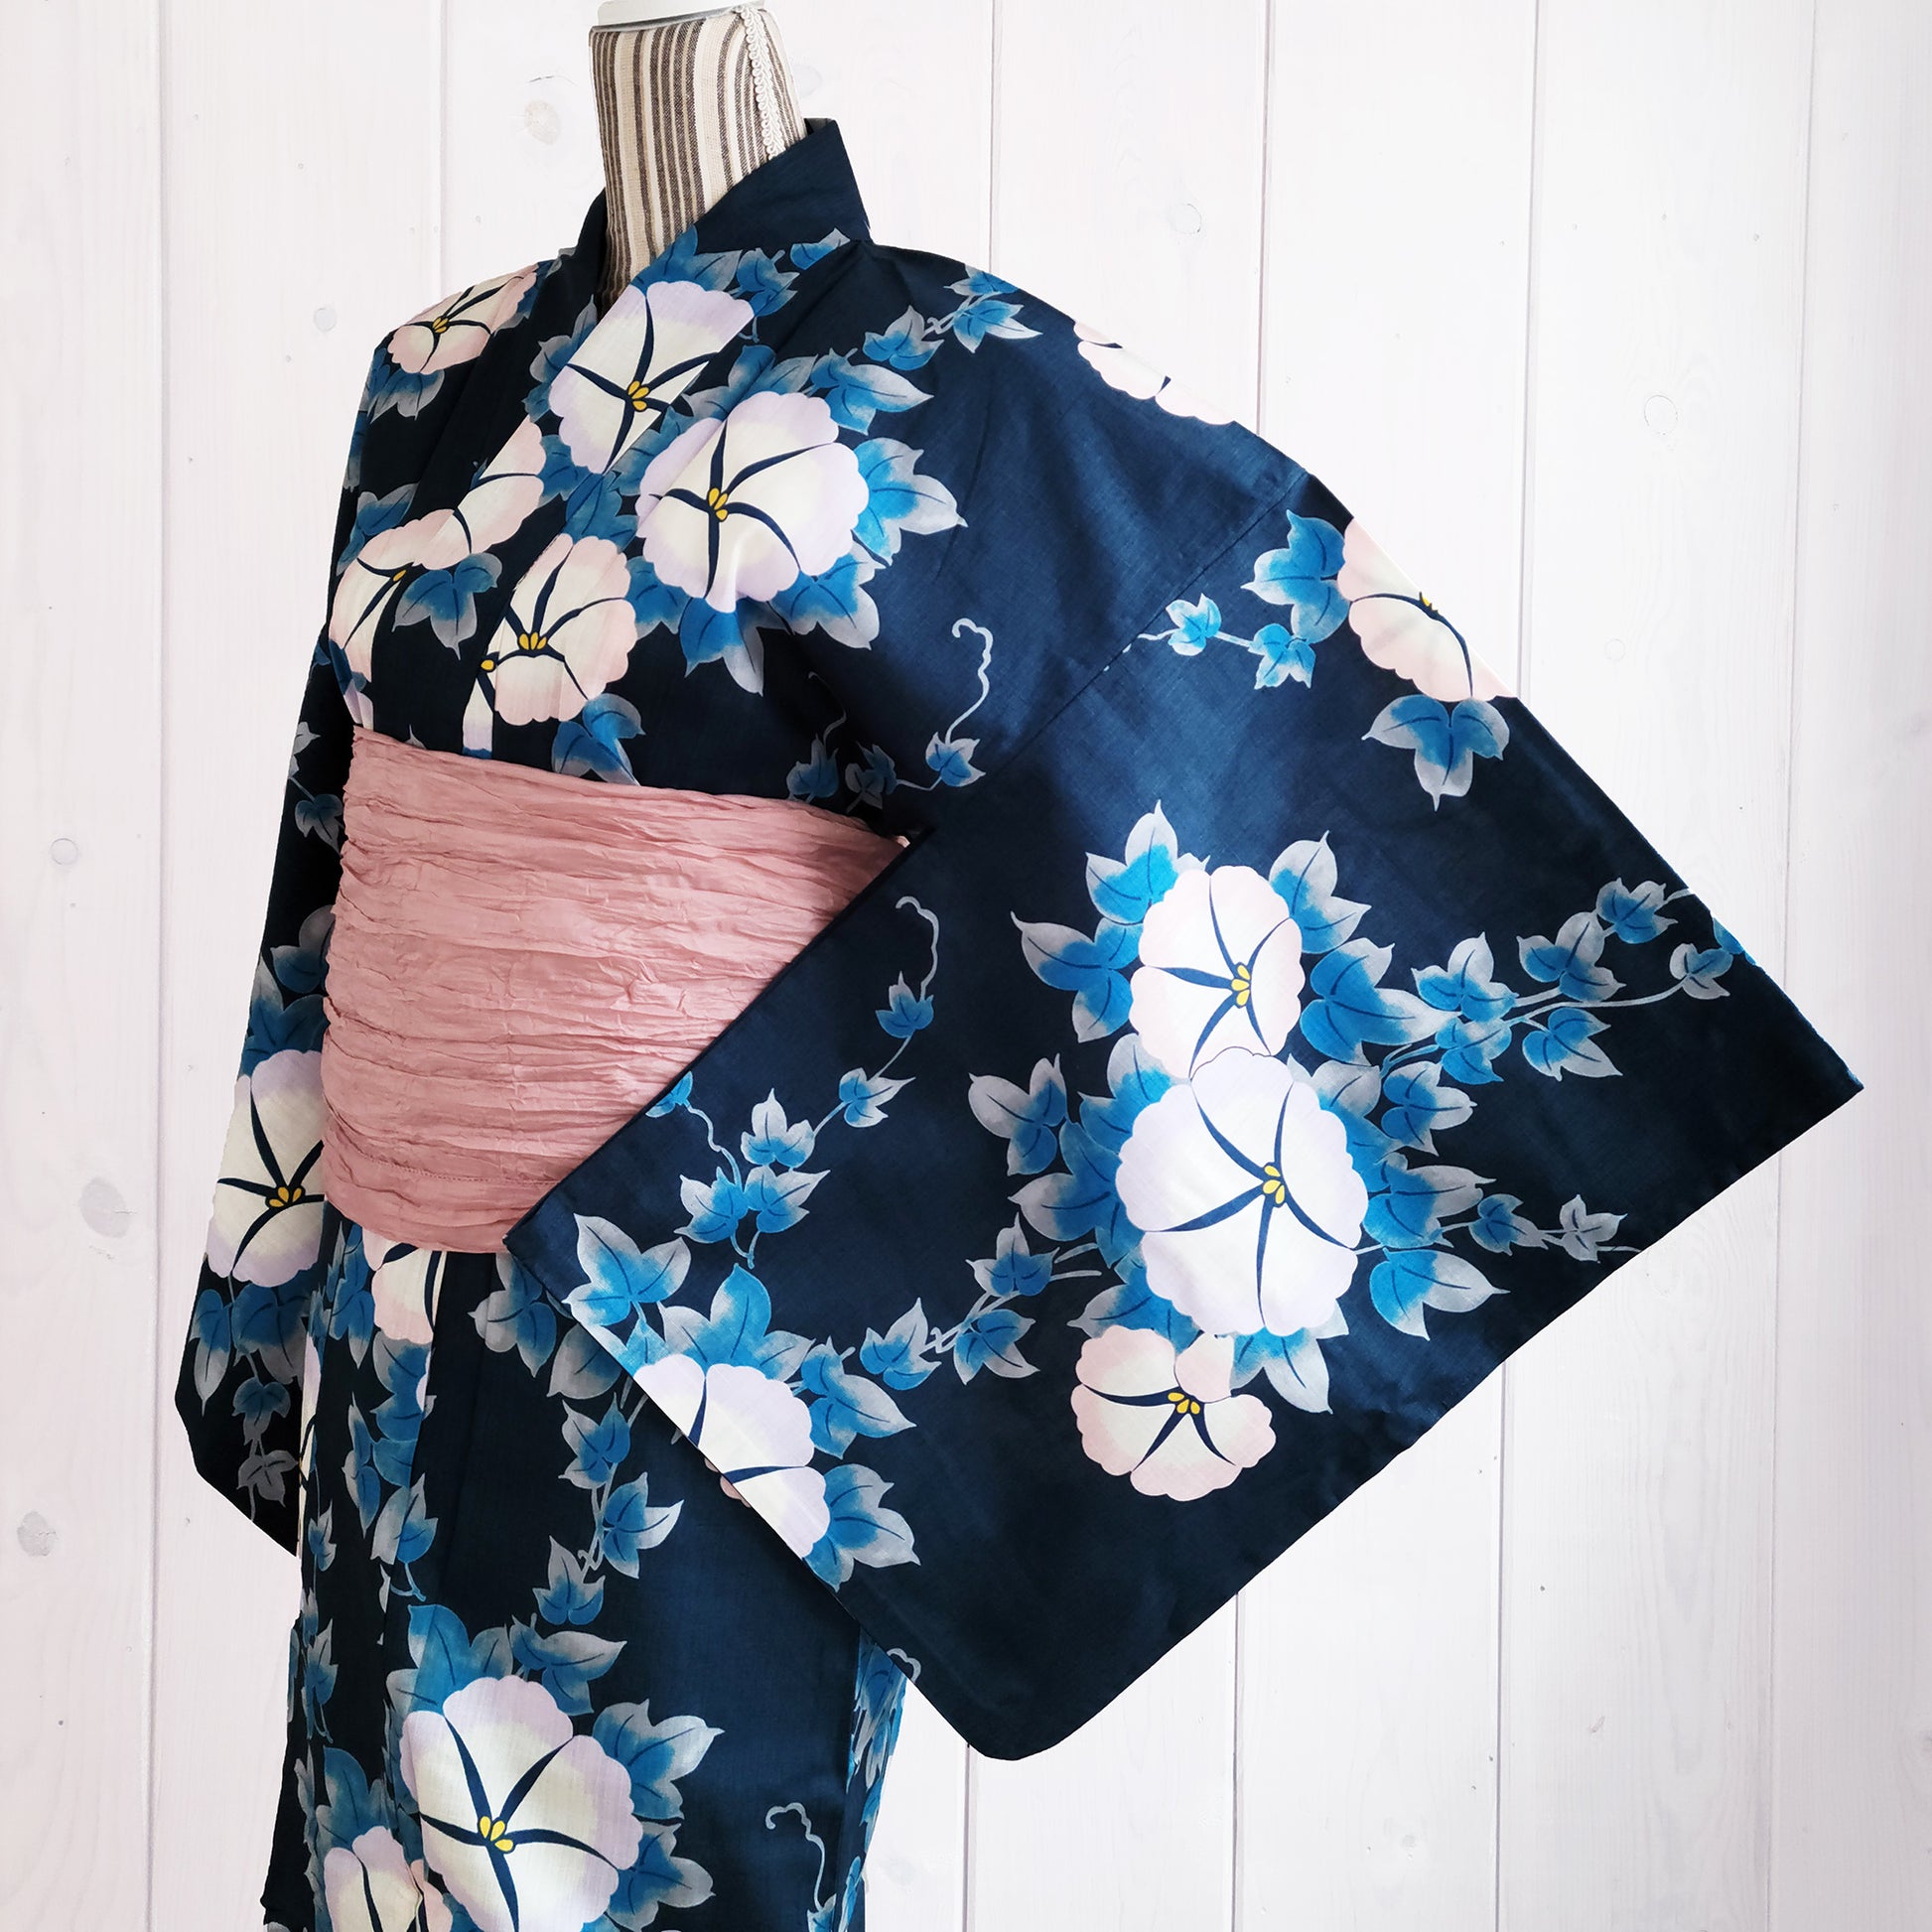 Women's Japanese Yukata Kimono - White Morning Glory in Indigo Blue